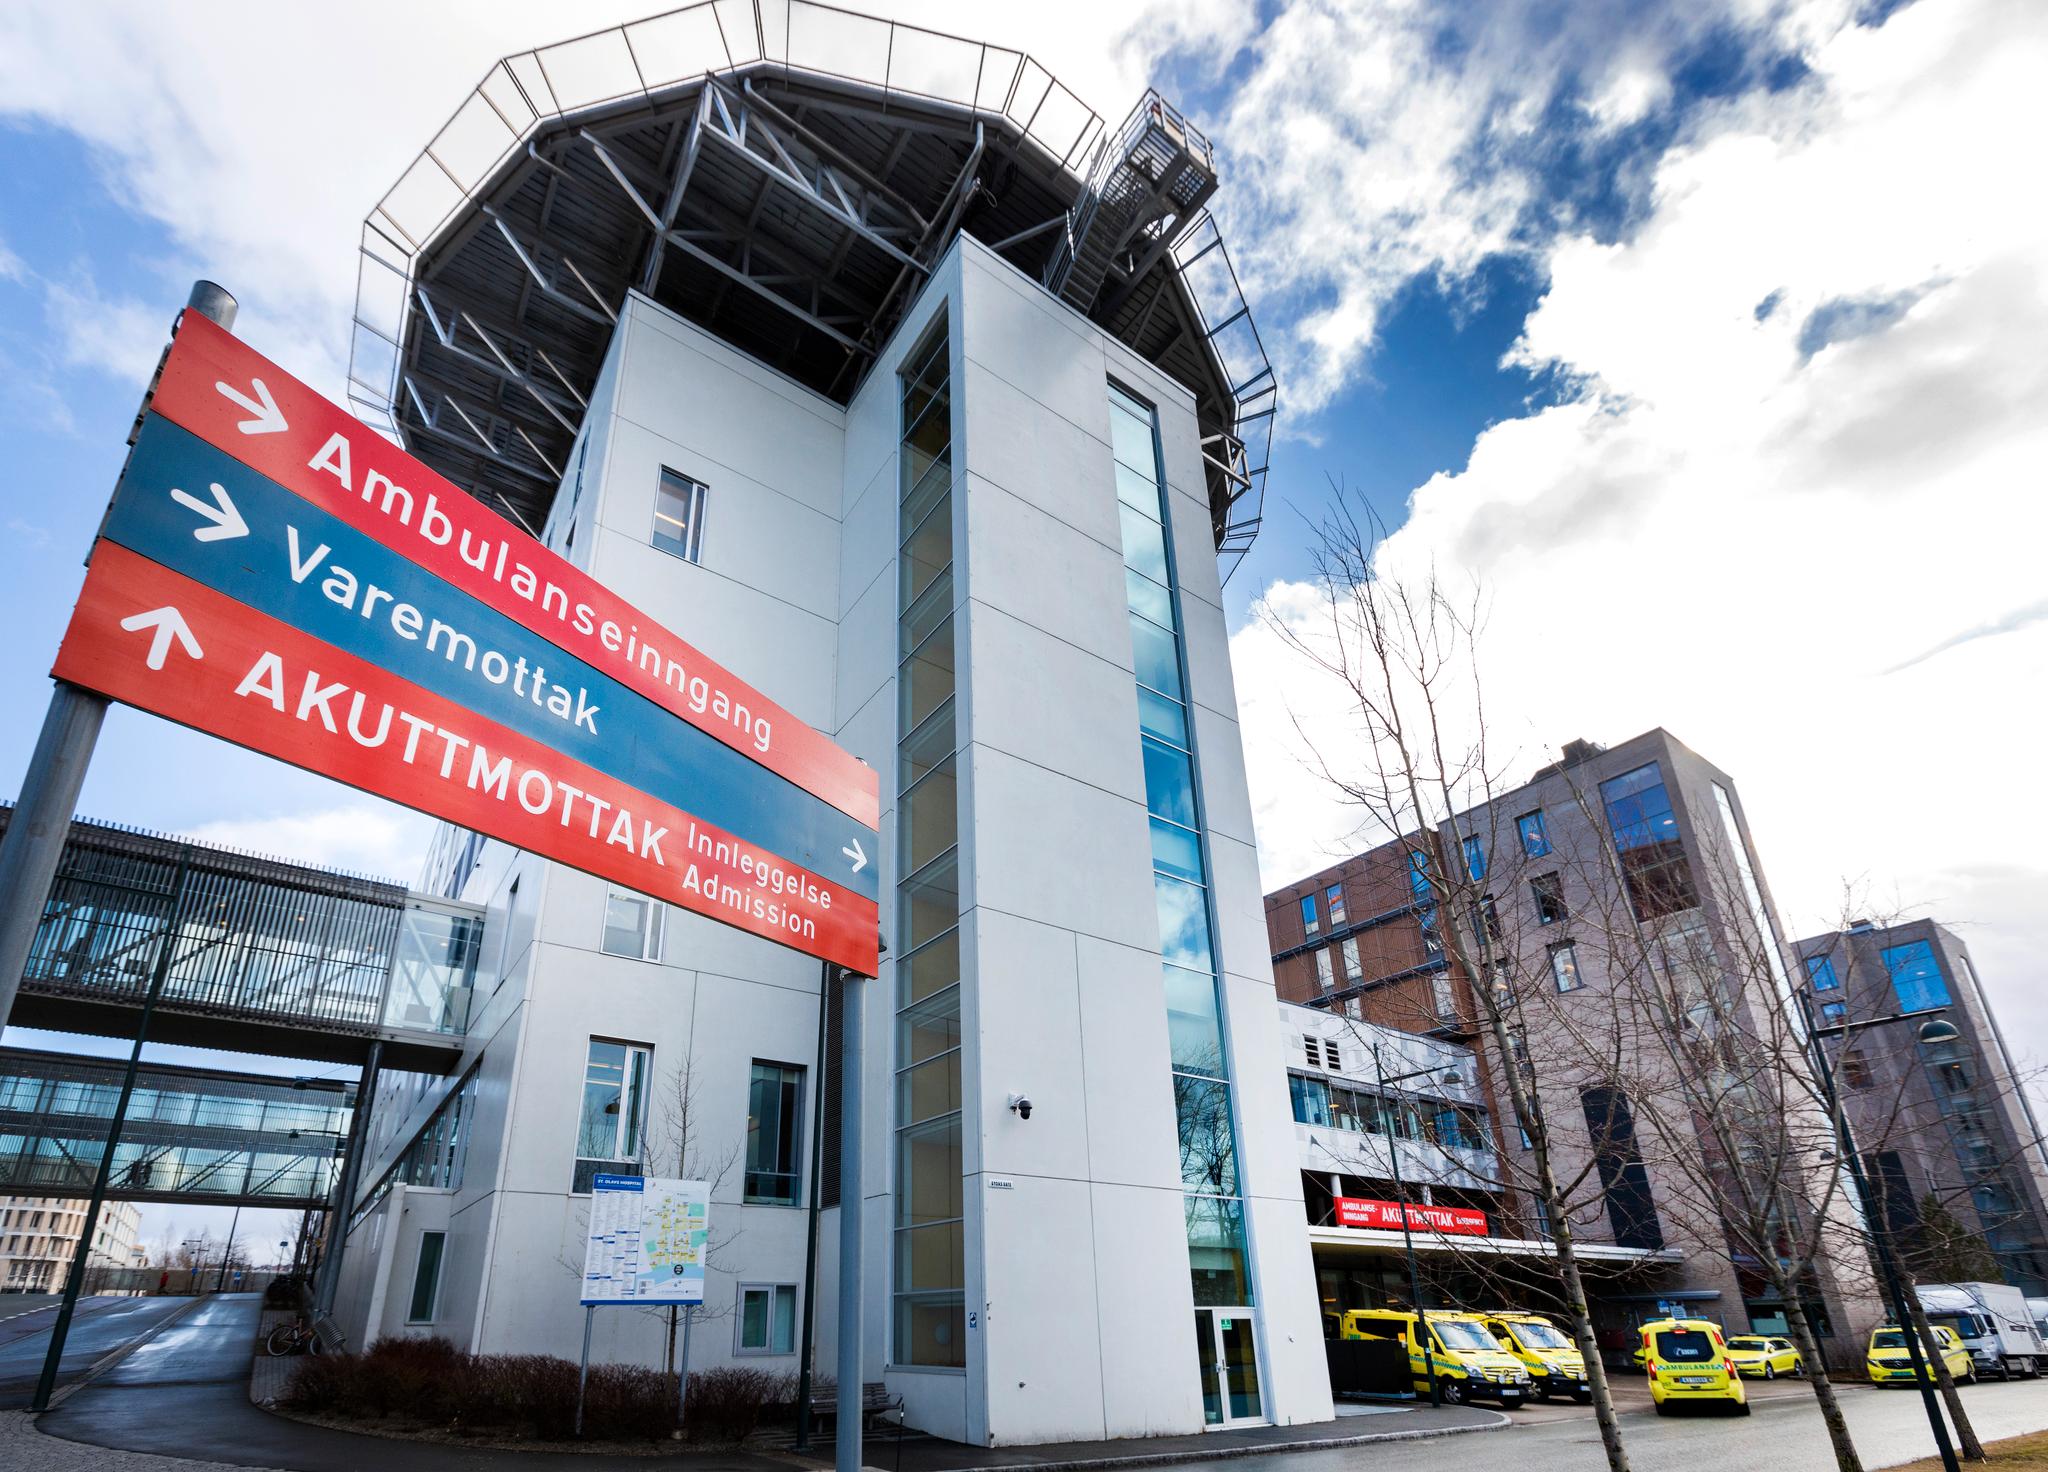 St. Olavs hospital (bildet), Helse Midt-Norge og Helse Møre og Romsdal får kritikk fra Helsetilsynet i en ny rapport. Foto: Gorm Kallestad / NTB scanpix